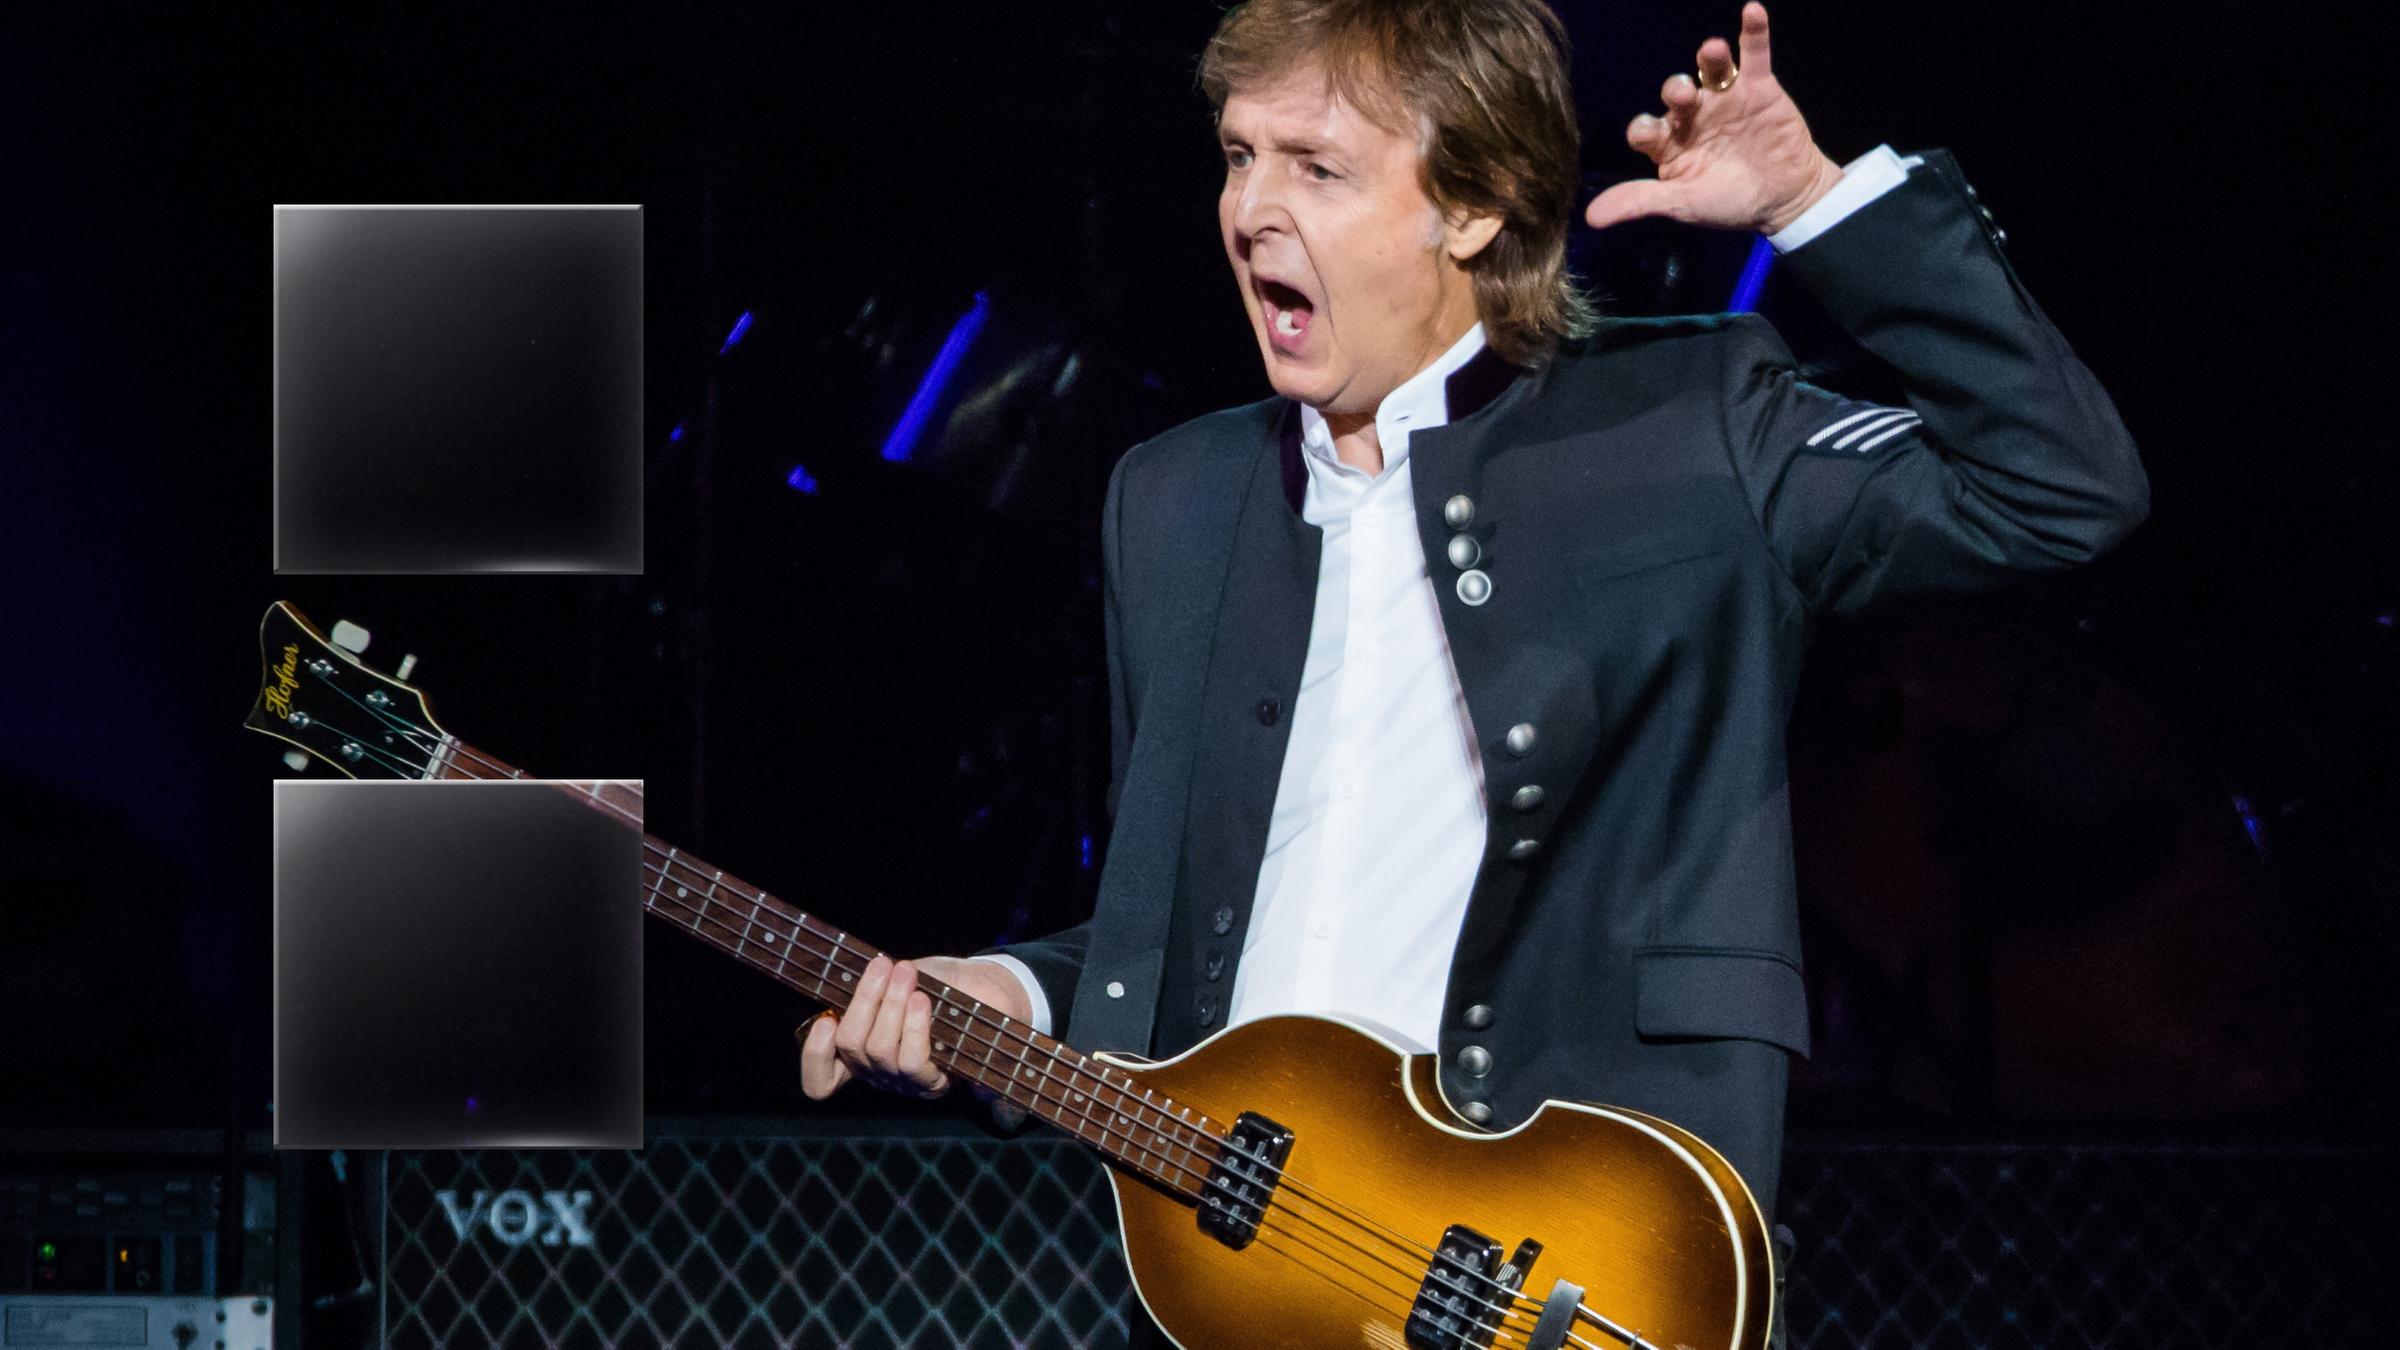 Paul McCartney steht im Vordergrund und spielt Bass. Im Hintergrund ist ein Schwarz-Weiß-Foto des jungen Paul McCartney auf schwarz-lilafarbener Projektionsfläche zu sehen.